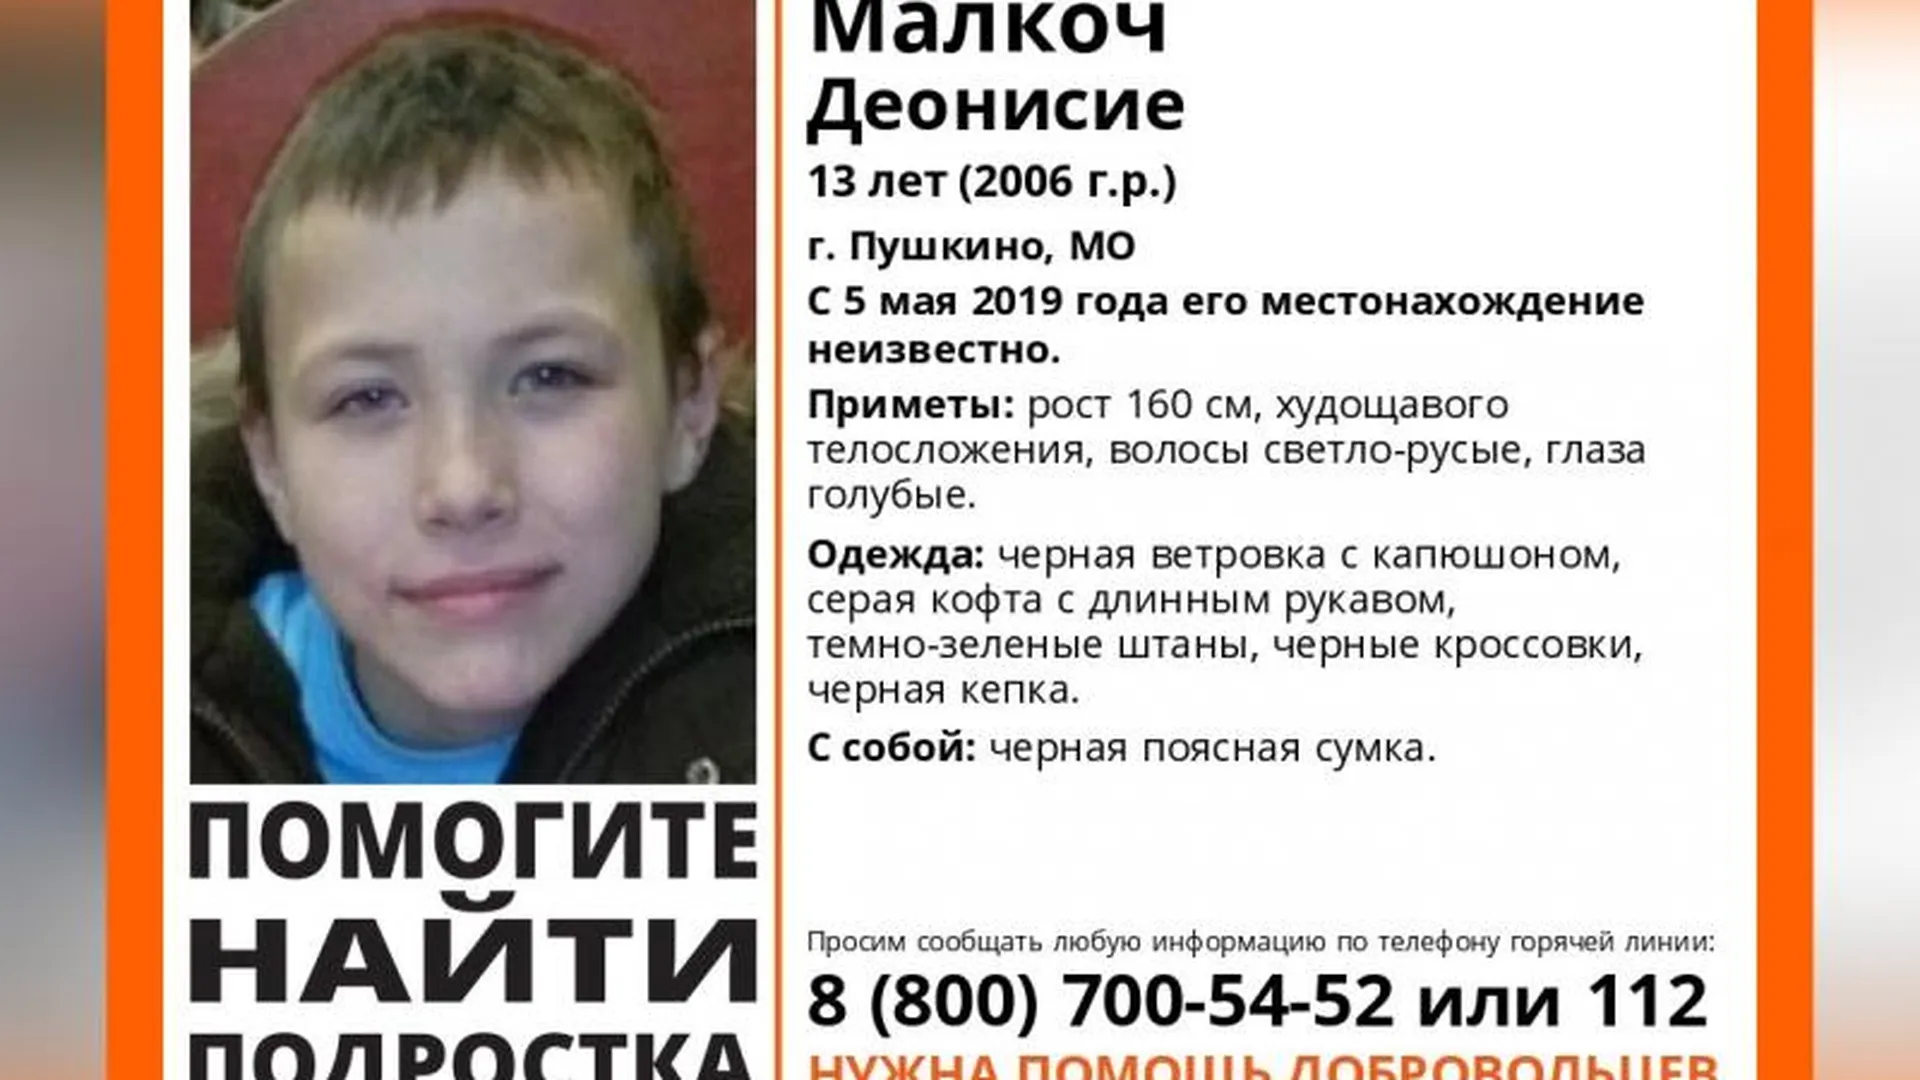 Подросток с необычным именем пропал в Пушкино, его ищут больше недели